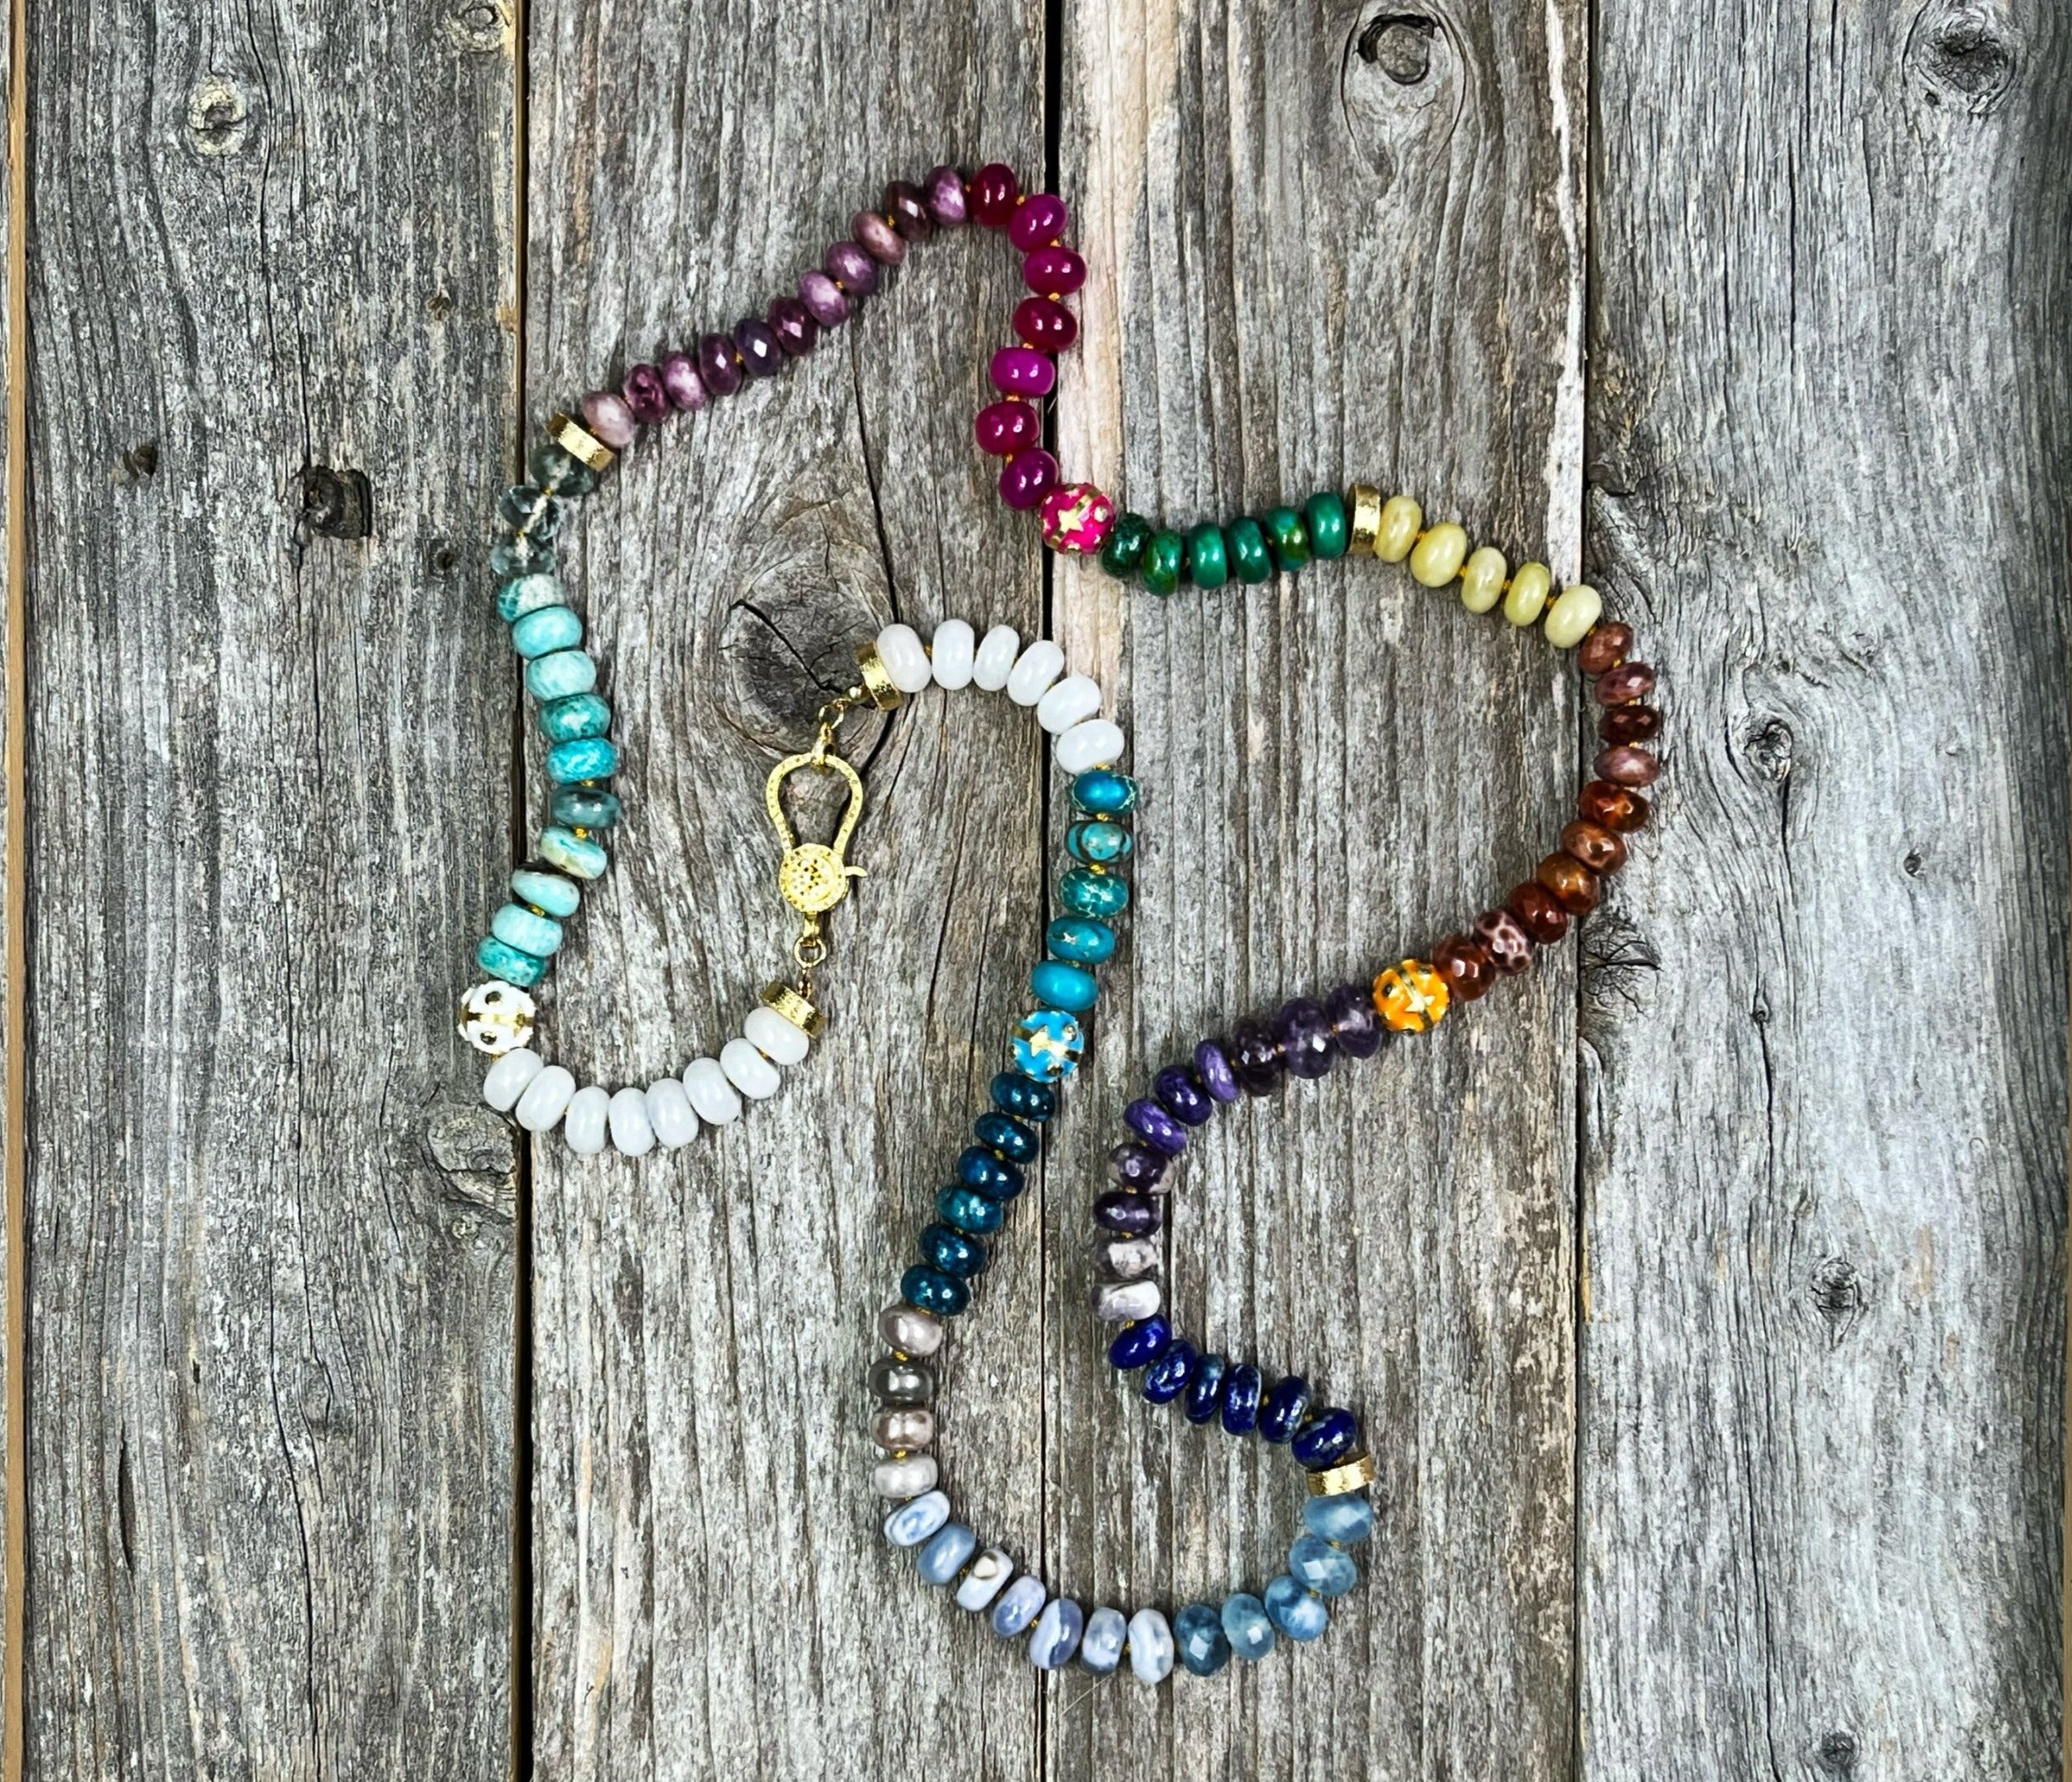 Gemstone Beads & Semi Precious Stone Beads